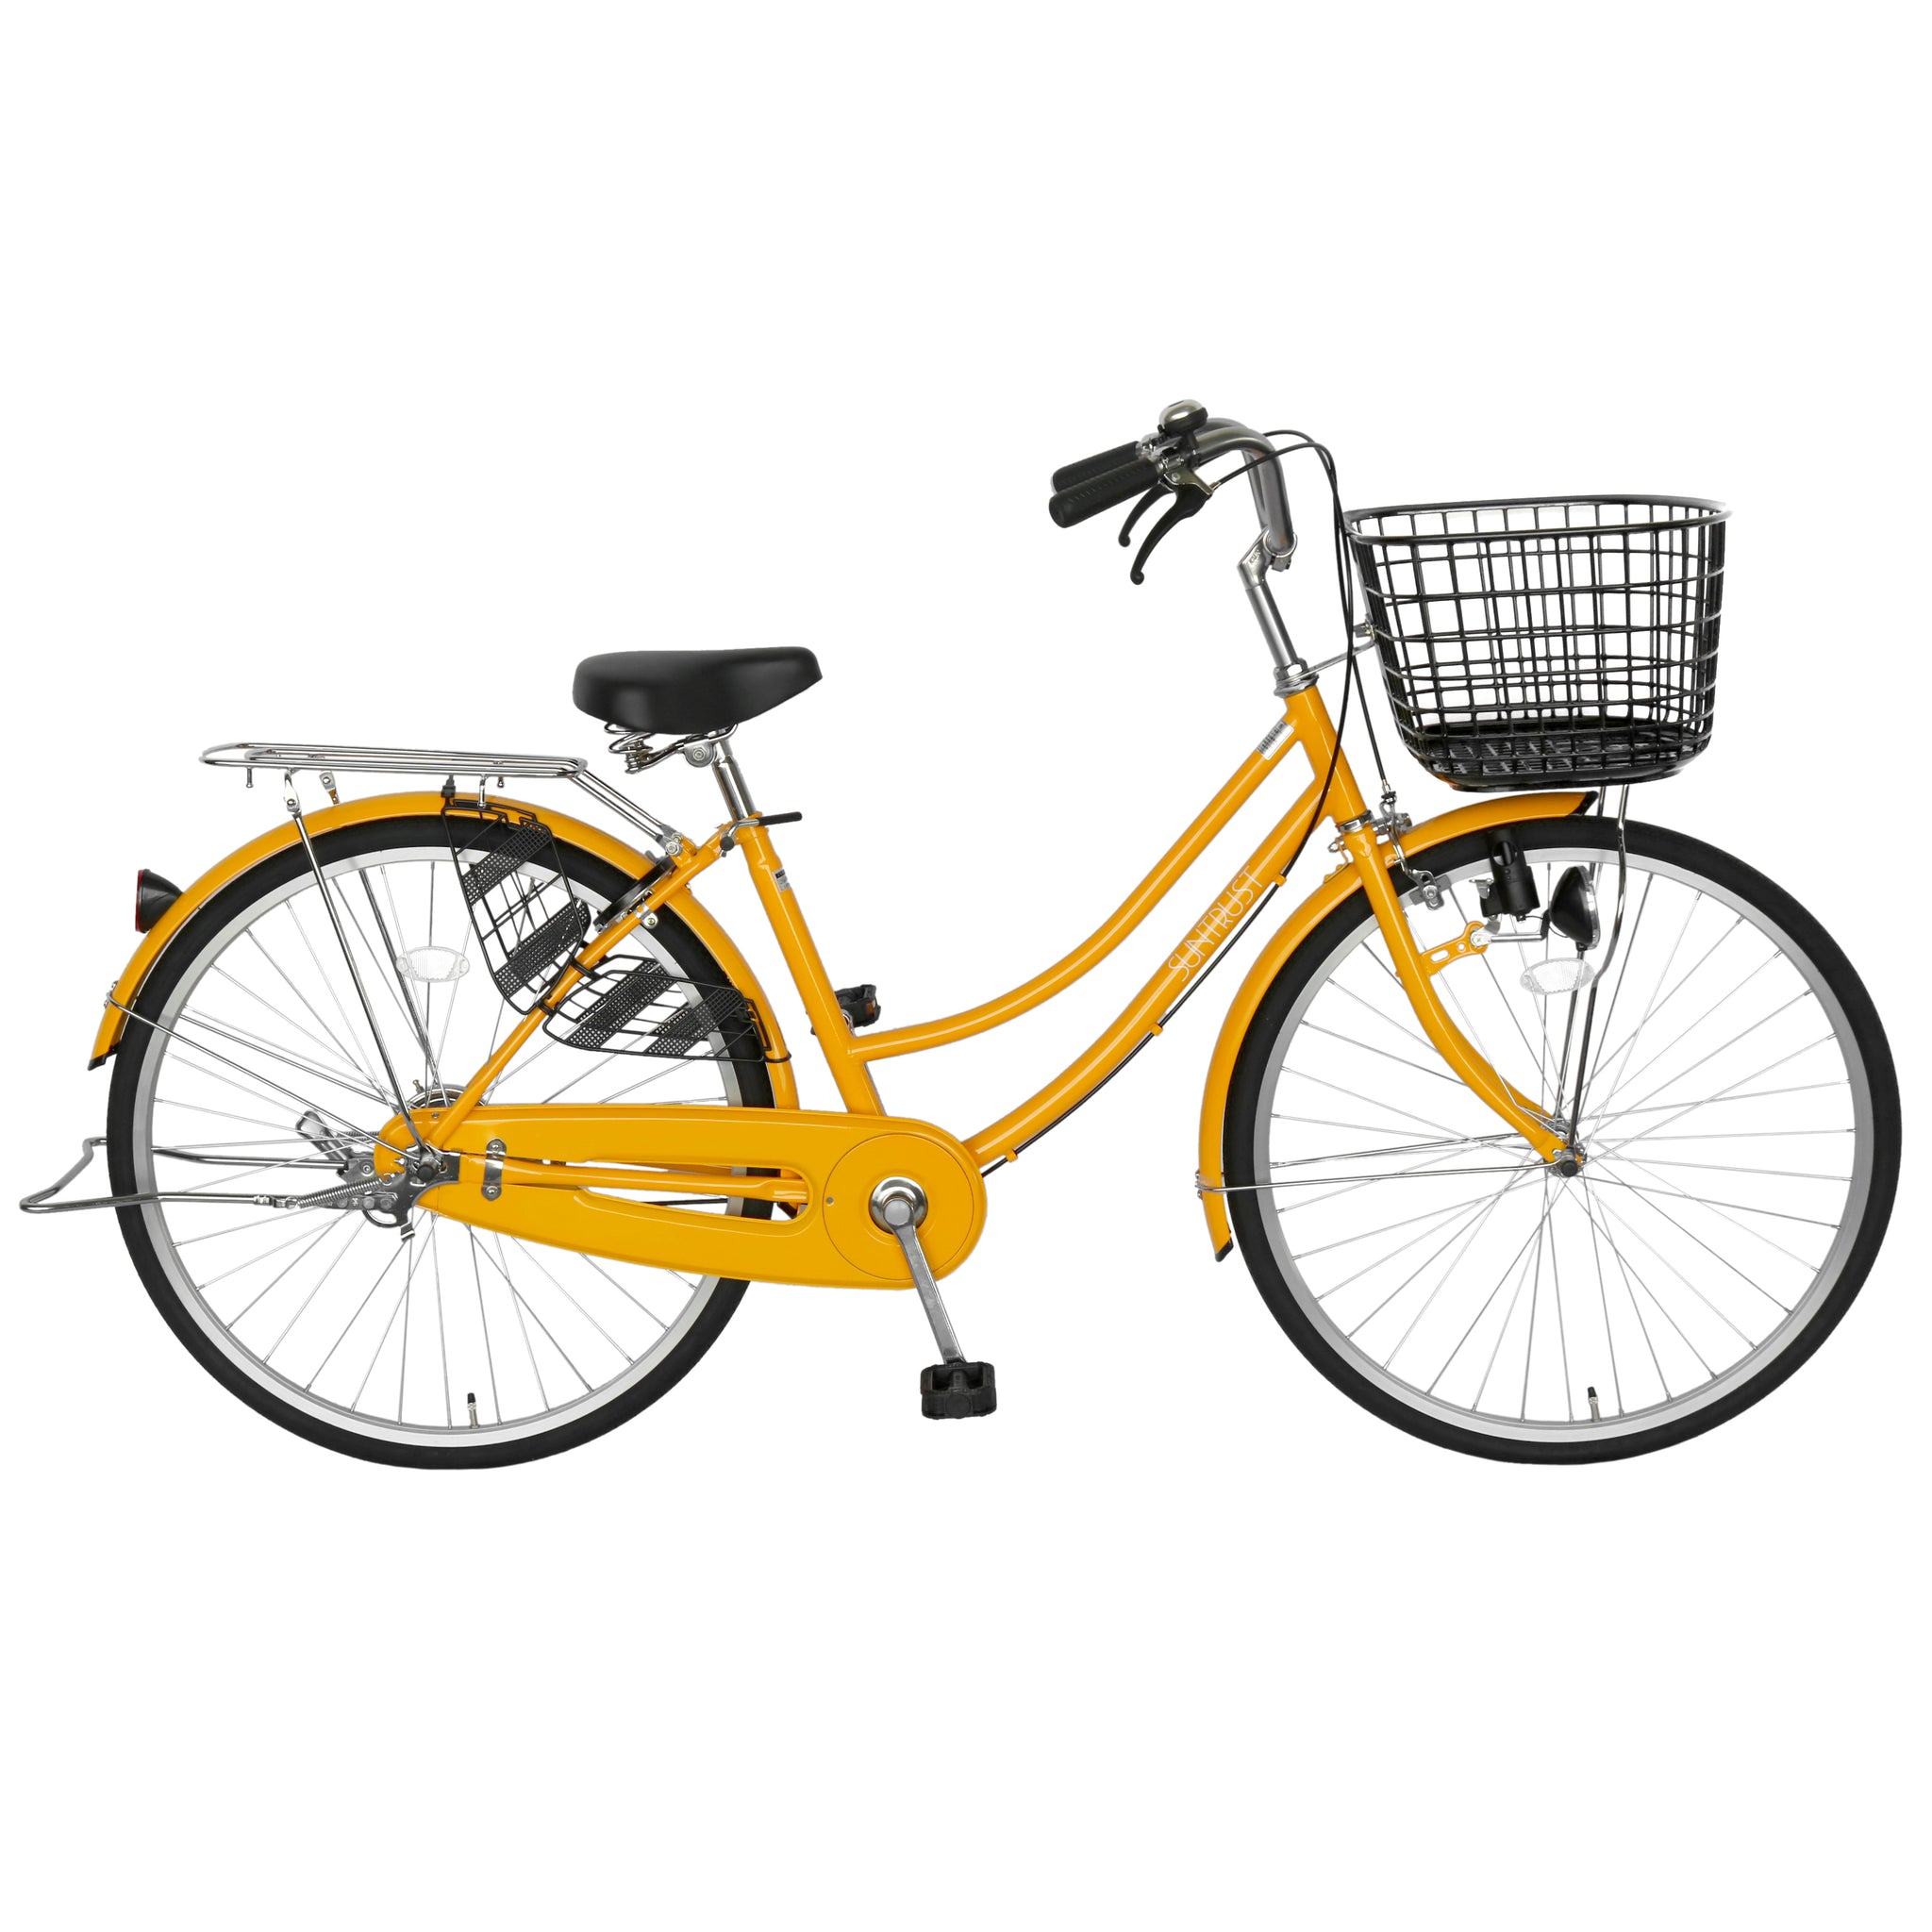 26インチ ママチャリ イエロー黄色 サントラスト Suntrust Ogk大きなかご 自転車 自転車 通販のゴーゴーサイクリング